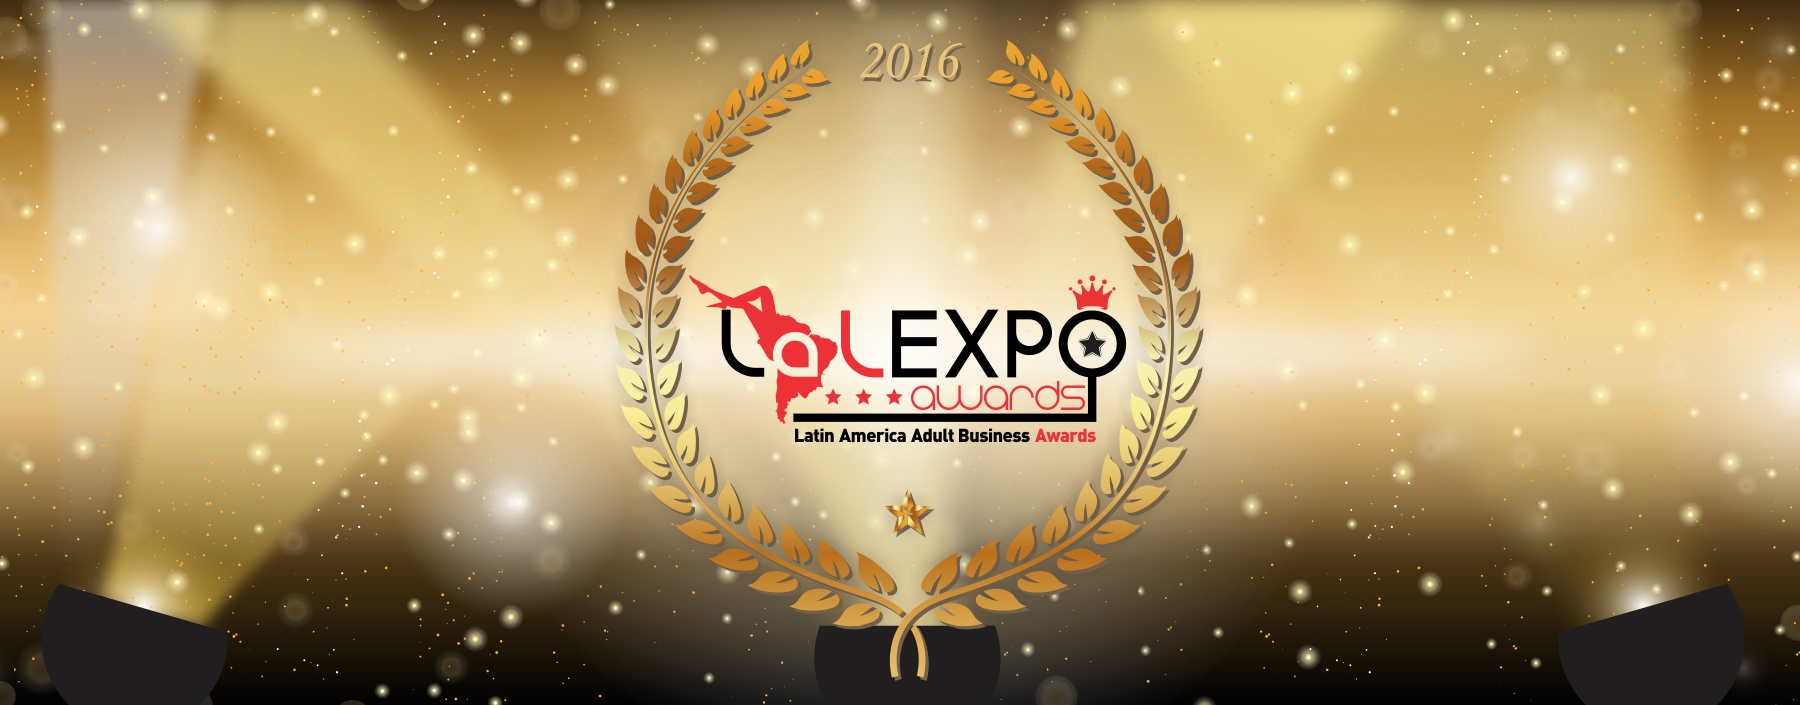 Vote nos Nomeados do CAM4 na LalExpo